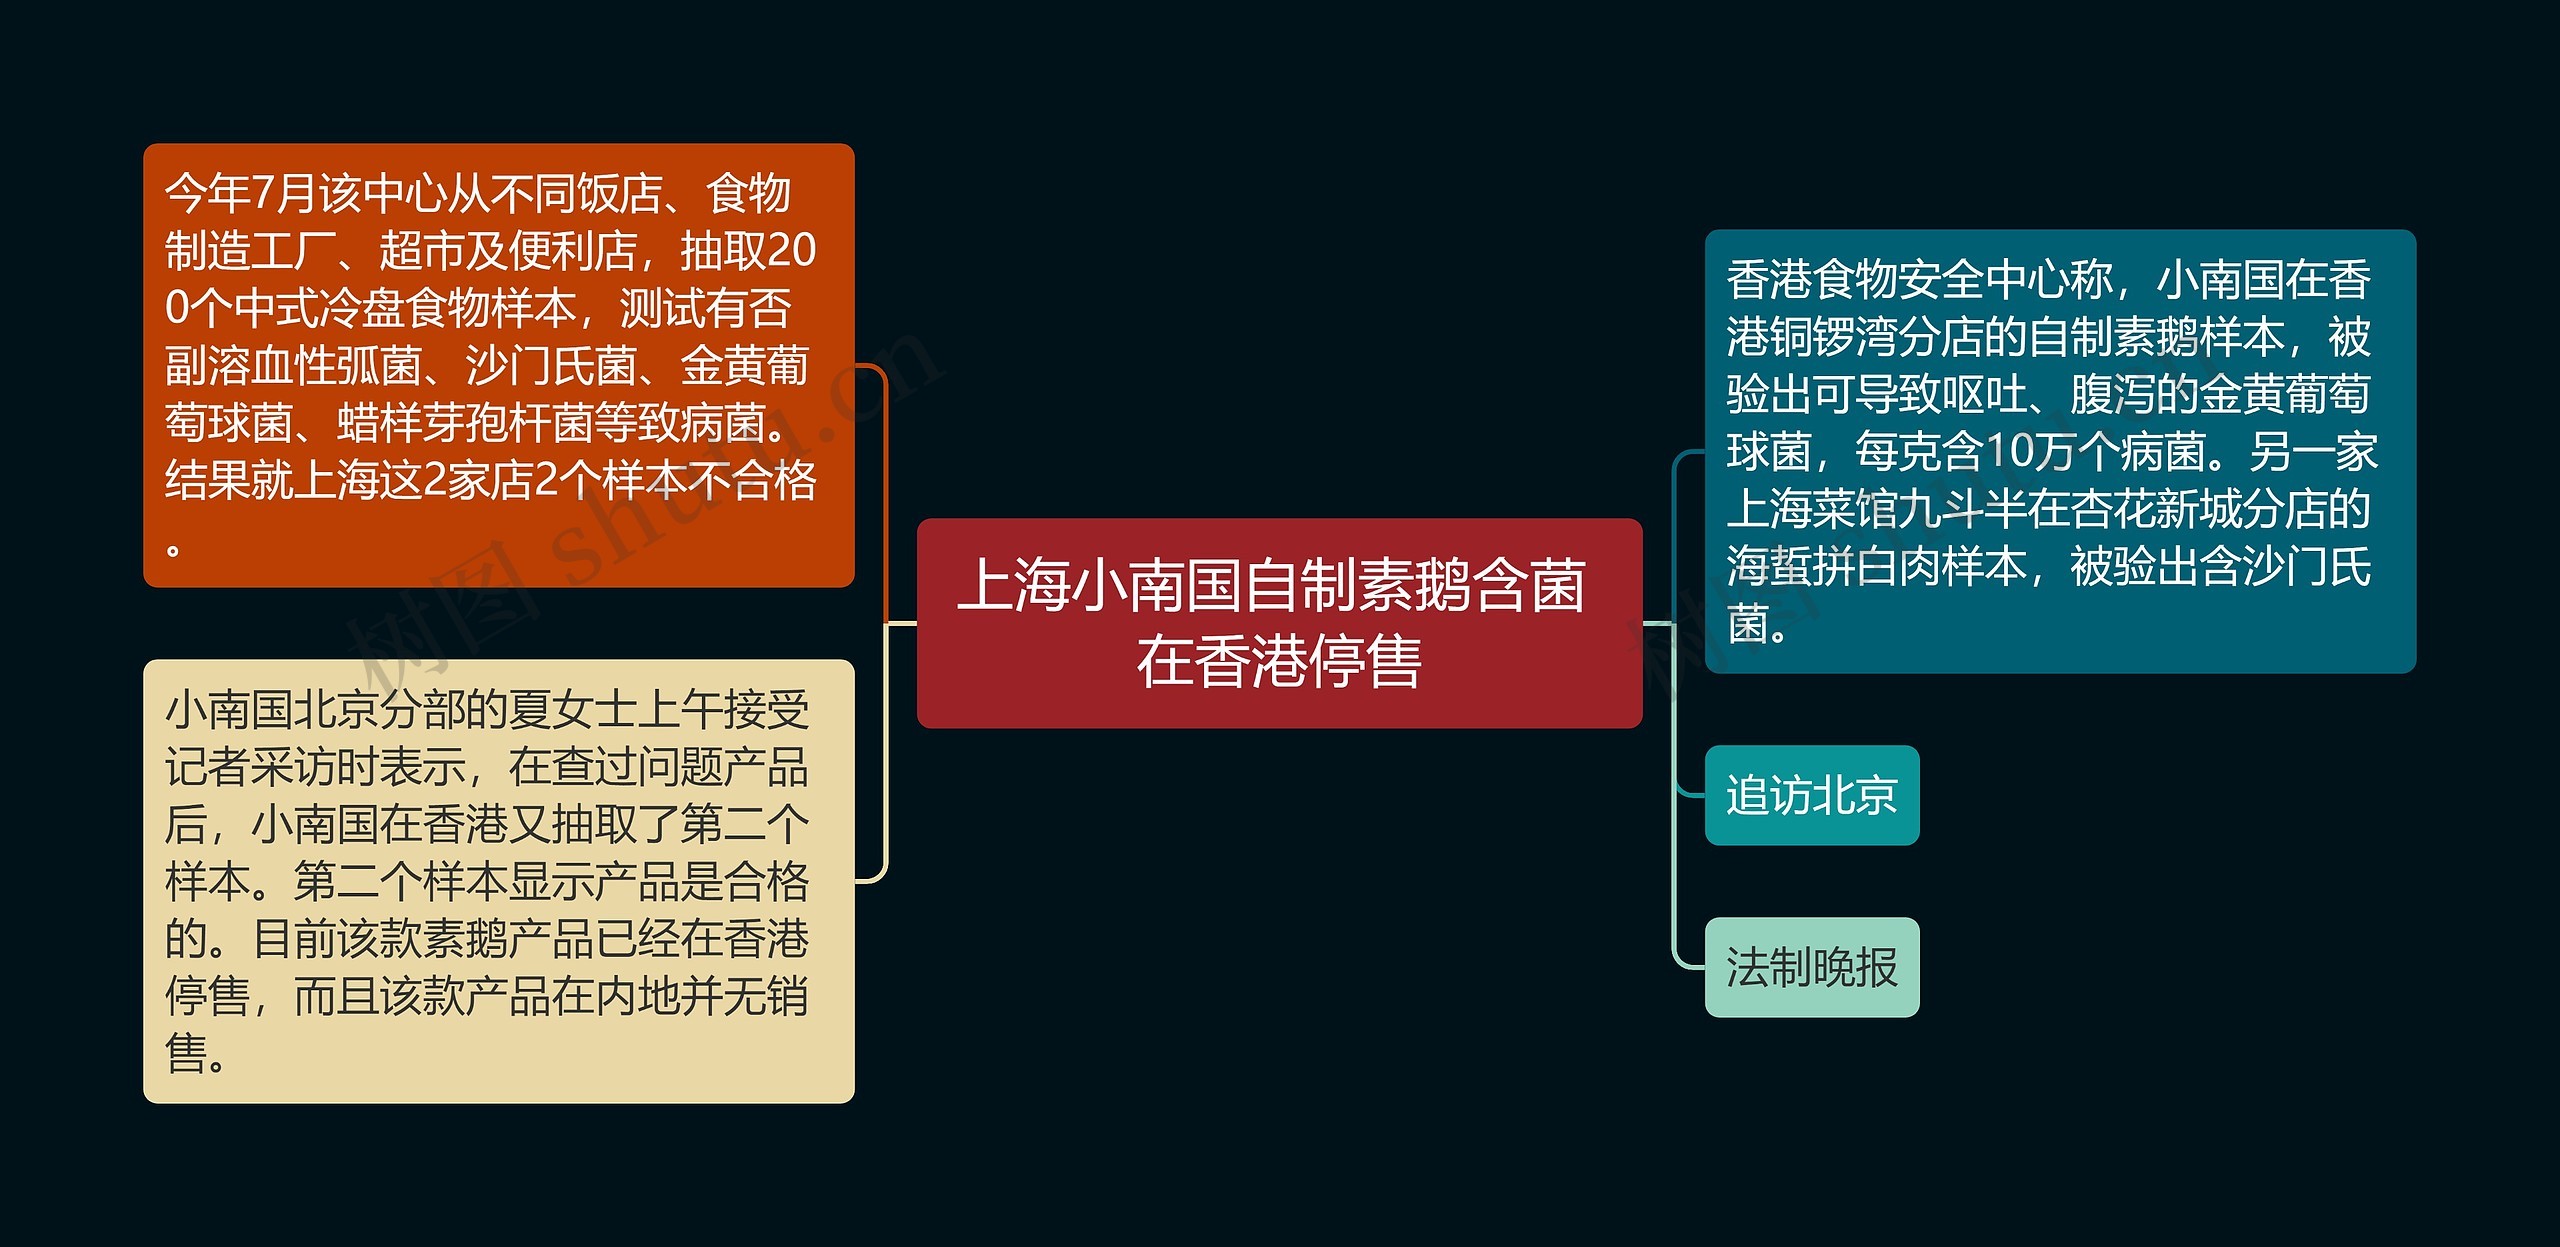 上海小南国自制素鹅含菌 在香港停售